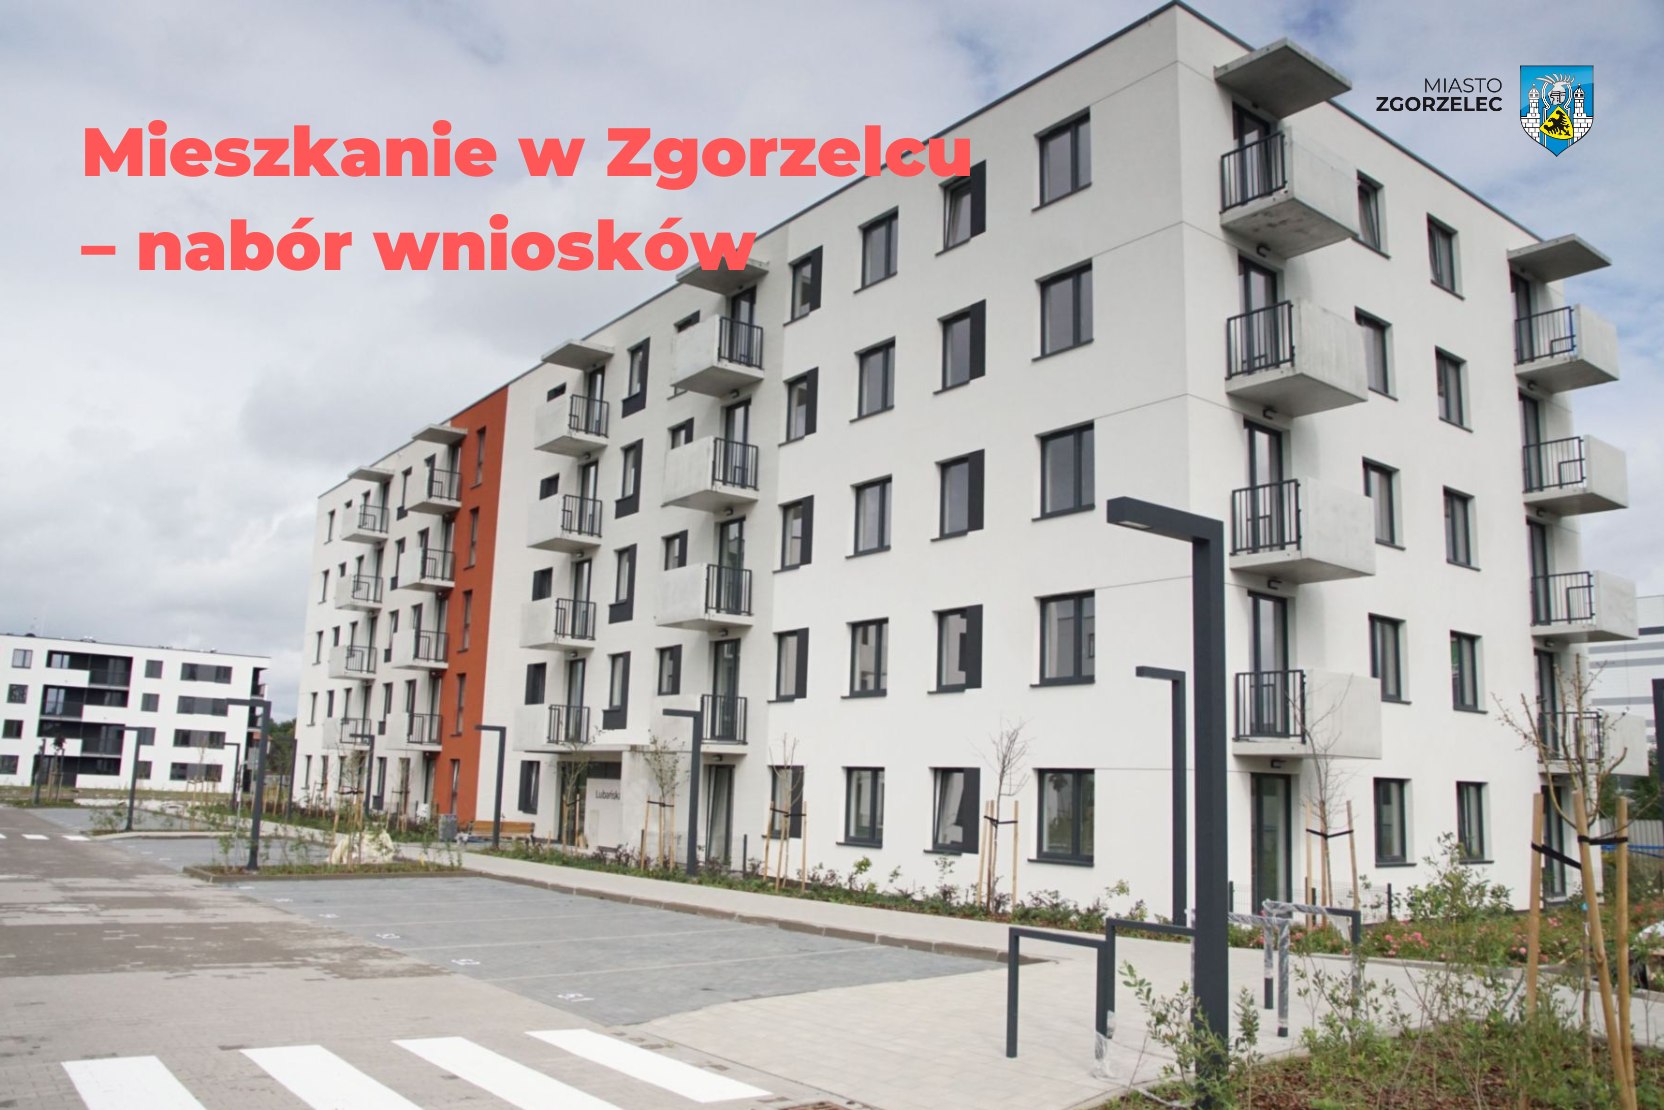 Mieszkanie 2 pokojowe nowe do wynajęcia Zgorzelec